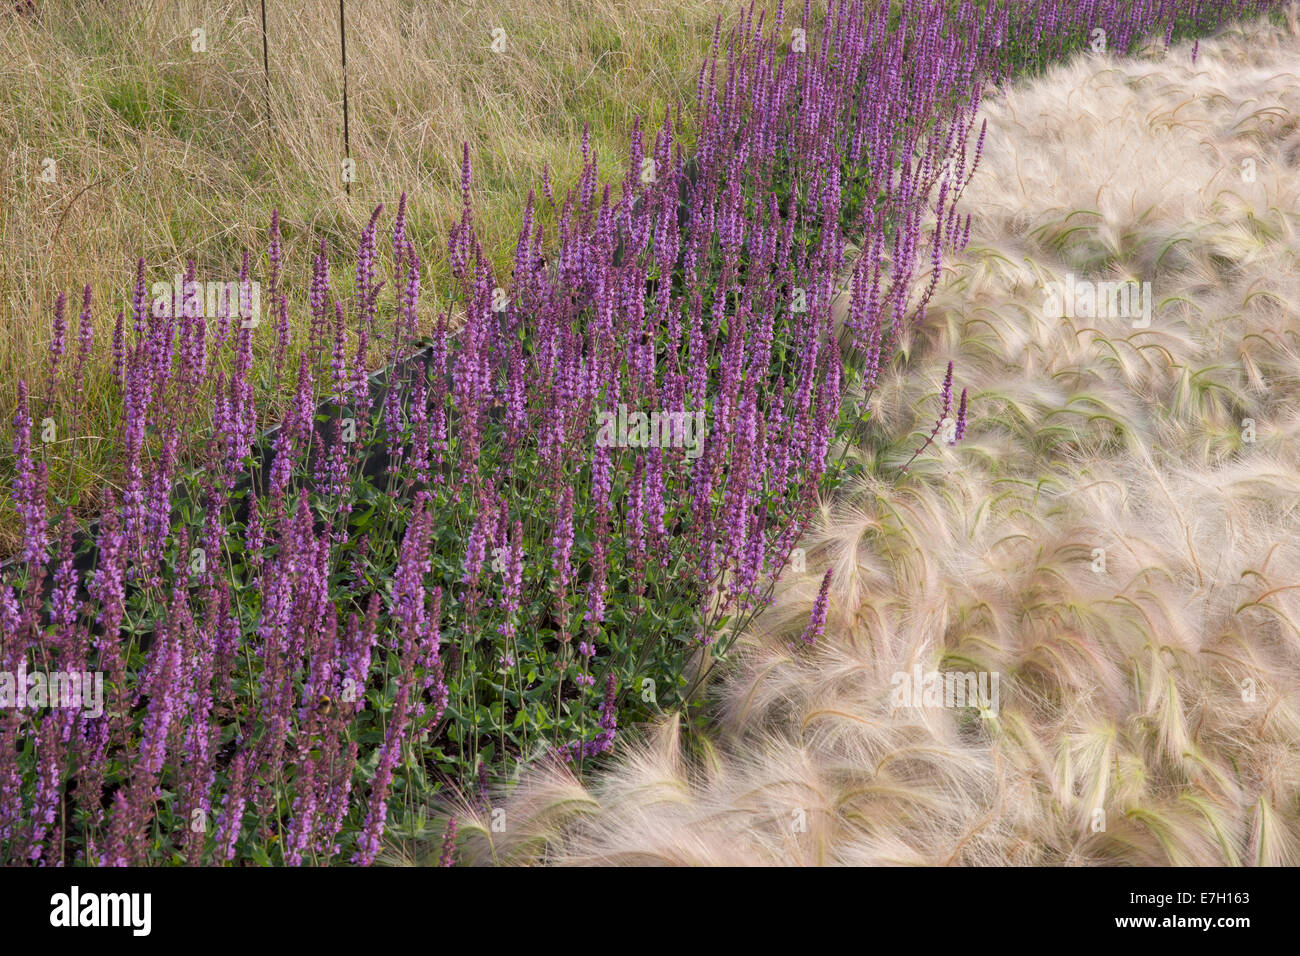 Jardin - Voir le vent - plantation de Hordeum jubatum herbe ornementale d'orge Salvia nemorosa 'Amethyst' - herbes ornementales frontières Royaume-Uni Banque D'Images